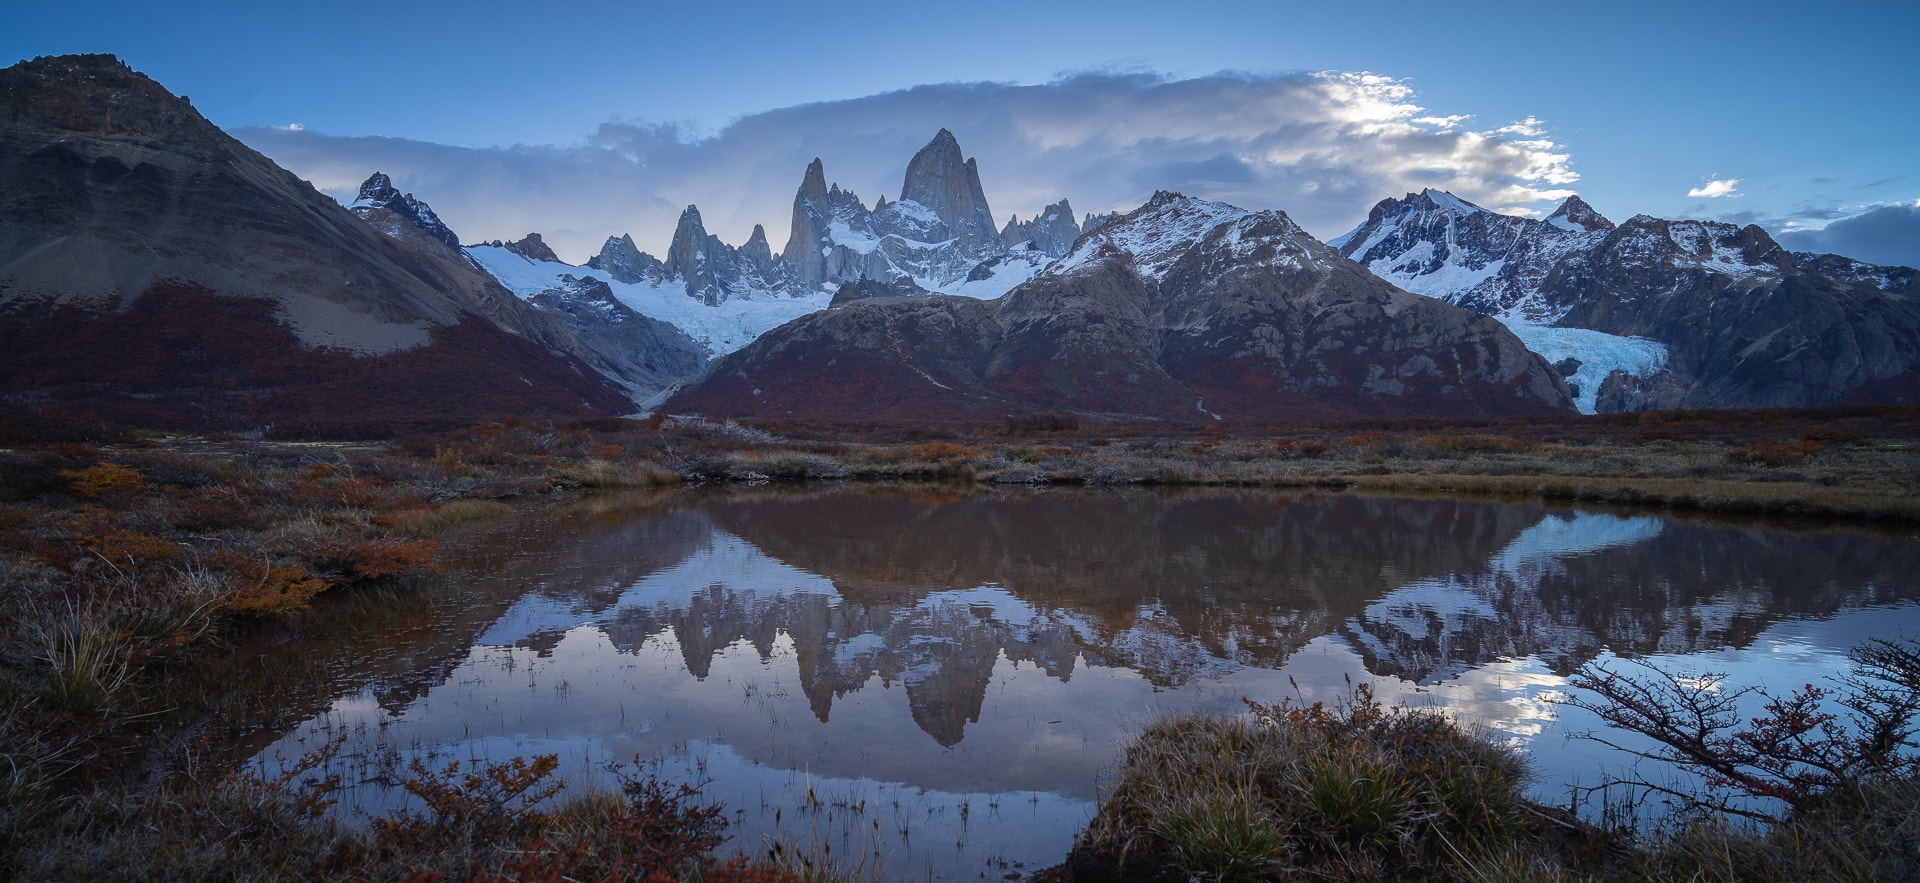 Fotografía vistas espectaculares en este viaje fotográfico a Patagonia